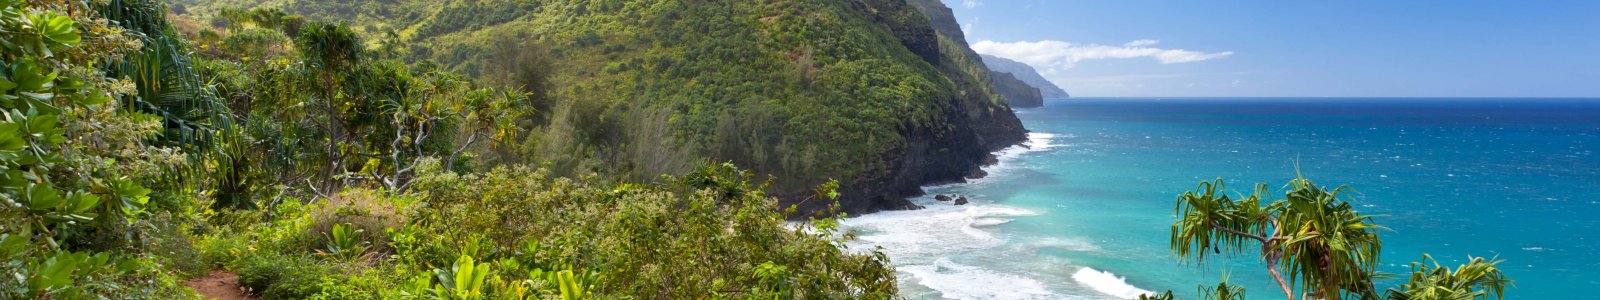 10 Adrenaline Pumping Activities You Can Do on Kauai